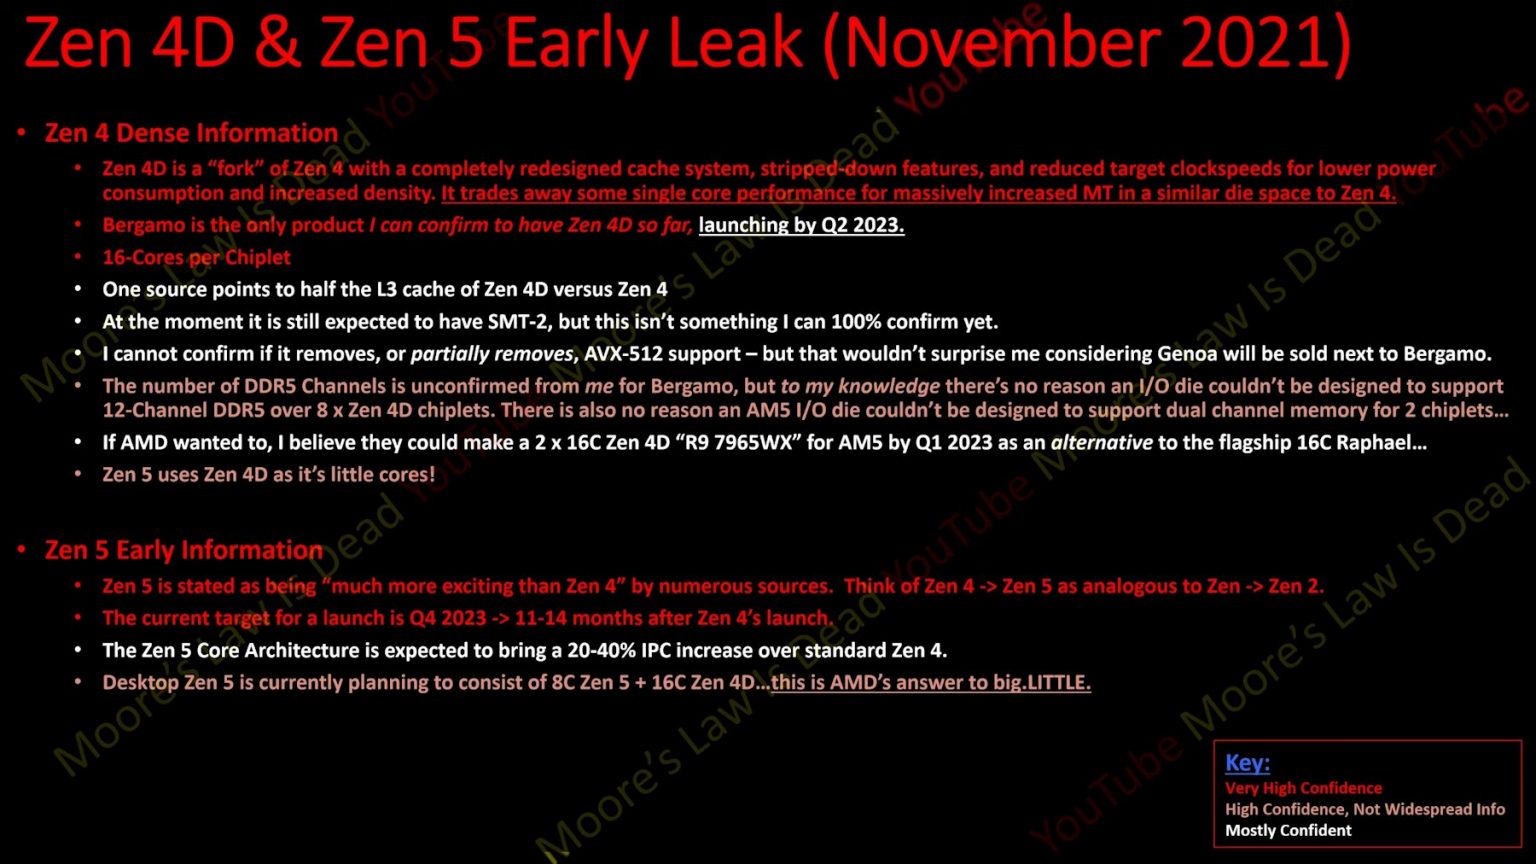 AMD-Zen4D-and-Zen5-info-MLID-1536x864.jpg